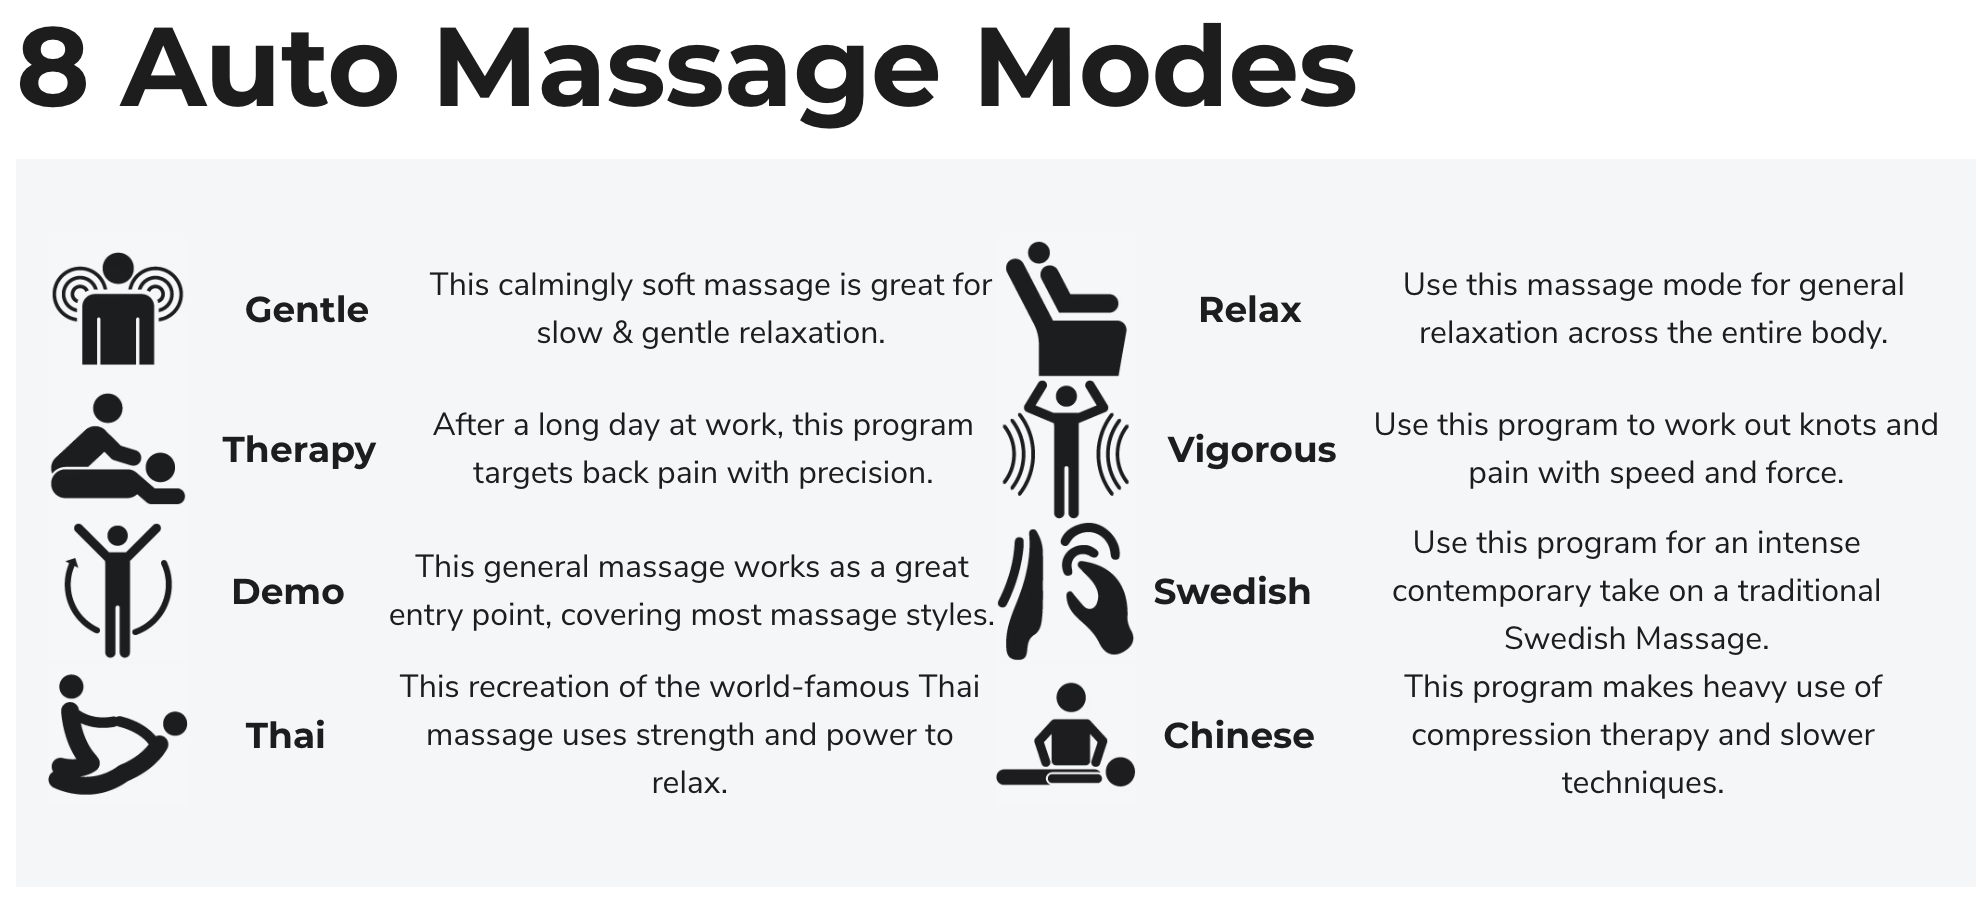 6 Manual Massage Styles